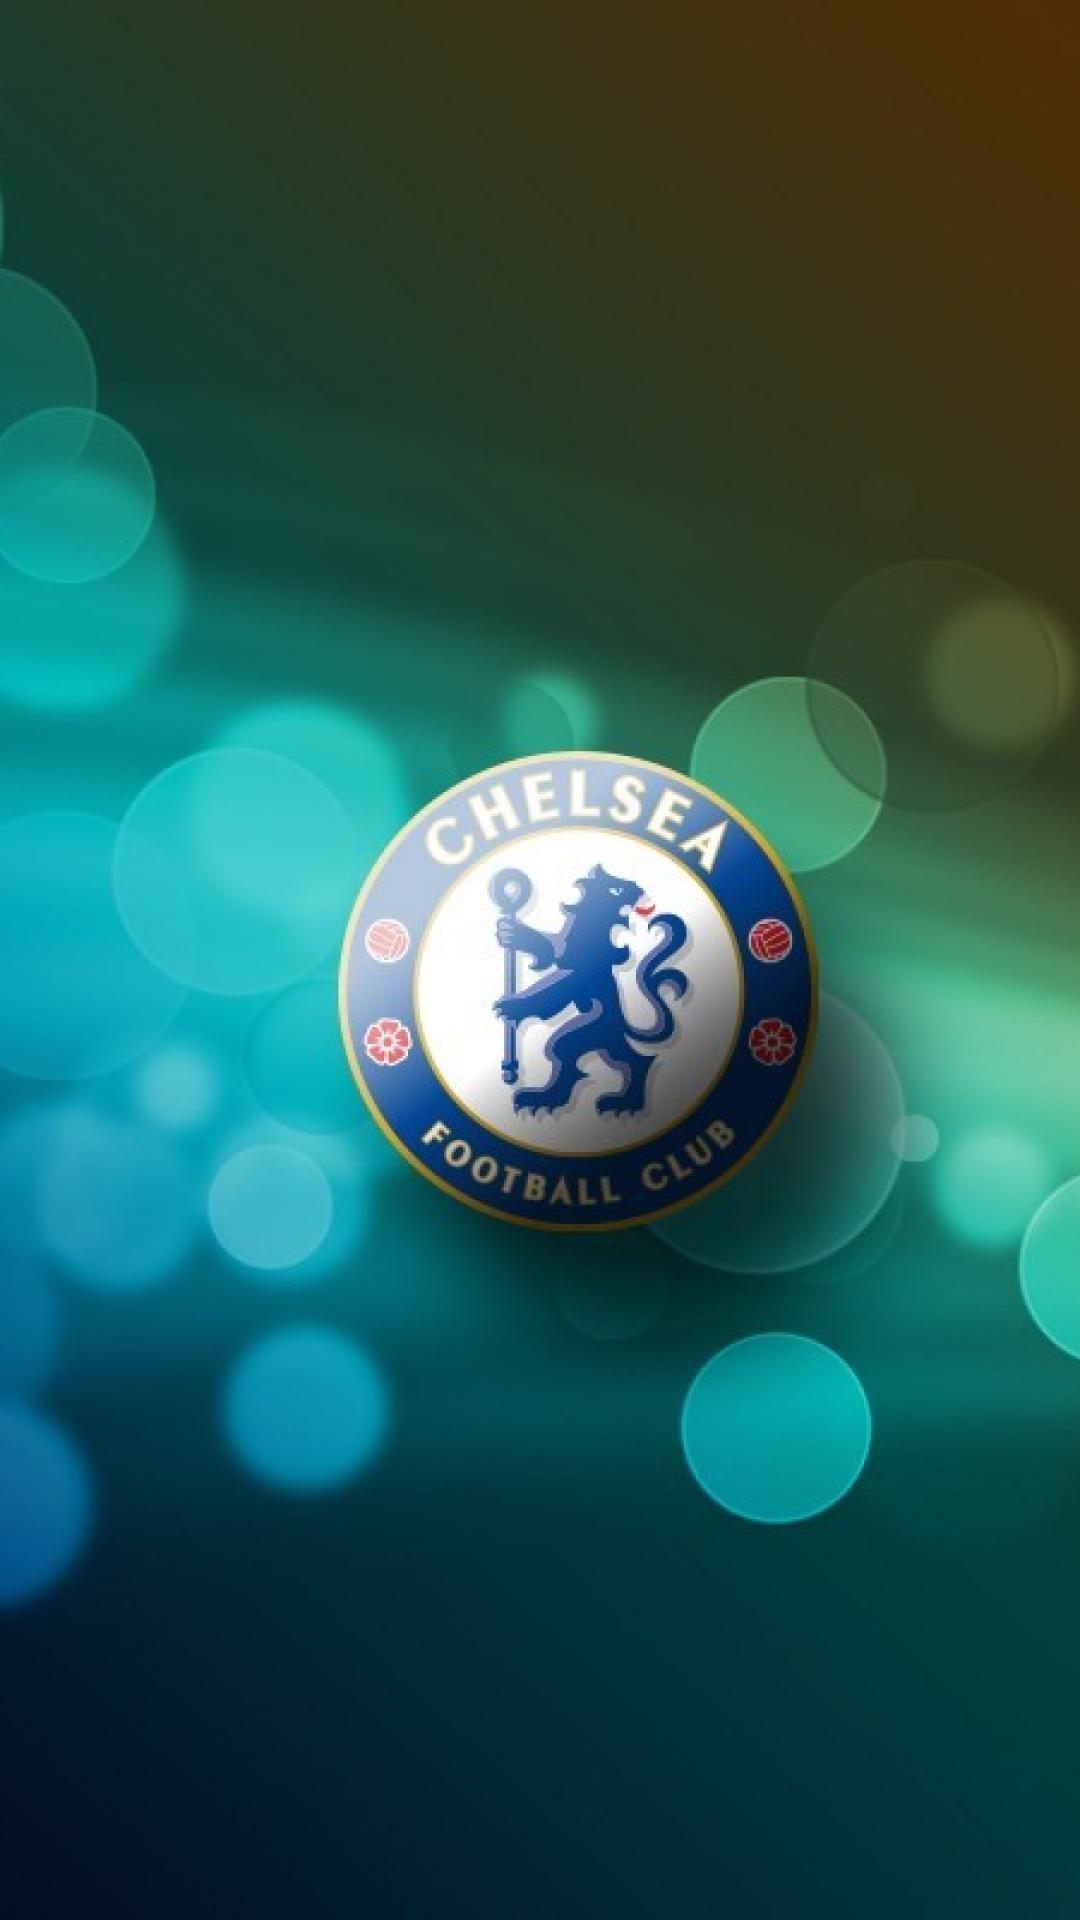 IPhone 8 Premier League  Chelsea Fc   teahubio HD phone wallpaper   Pxfuel